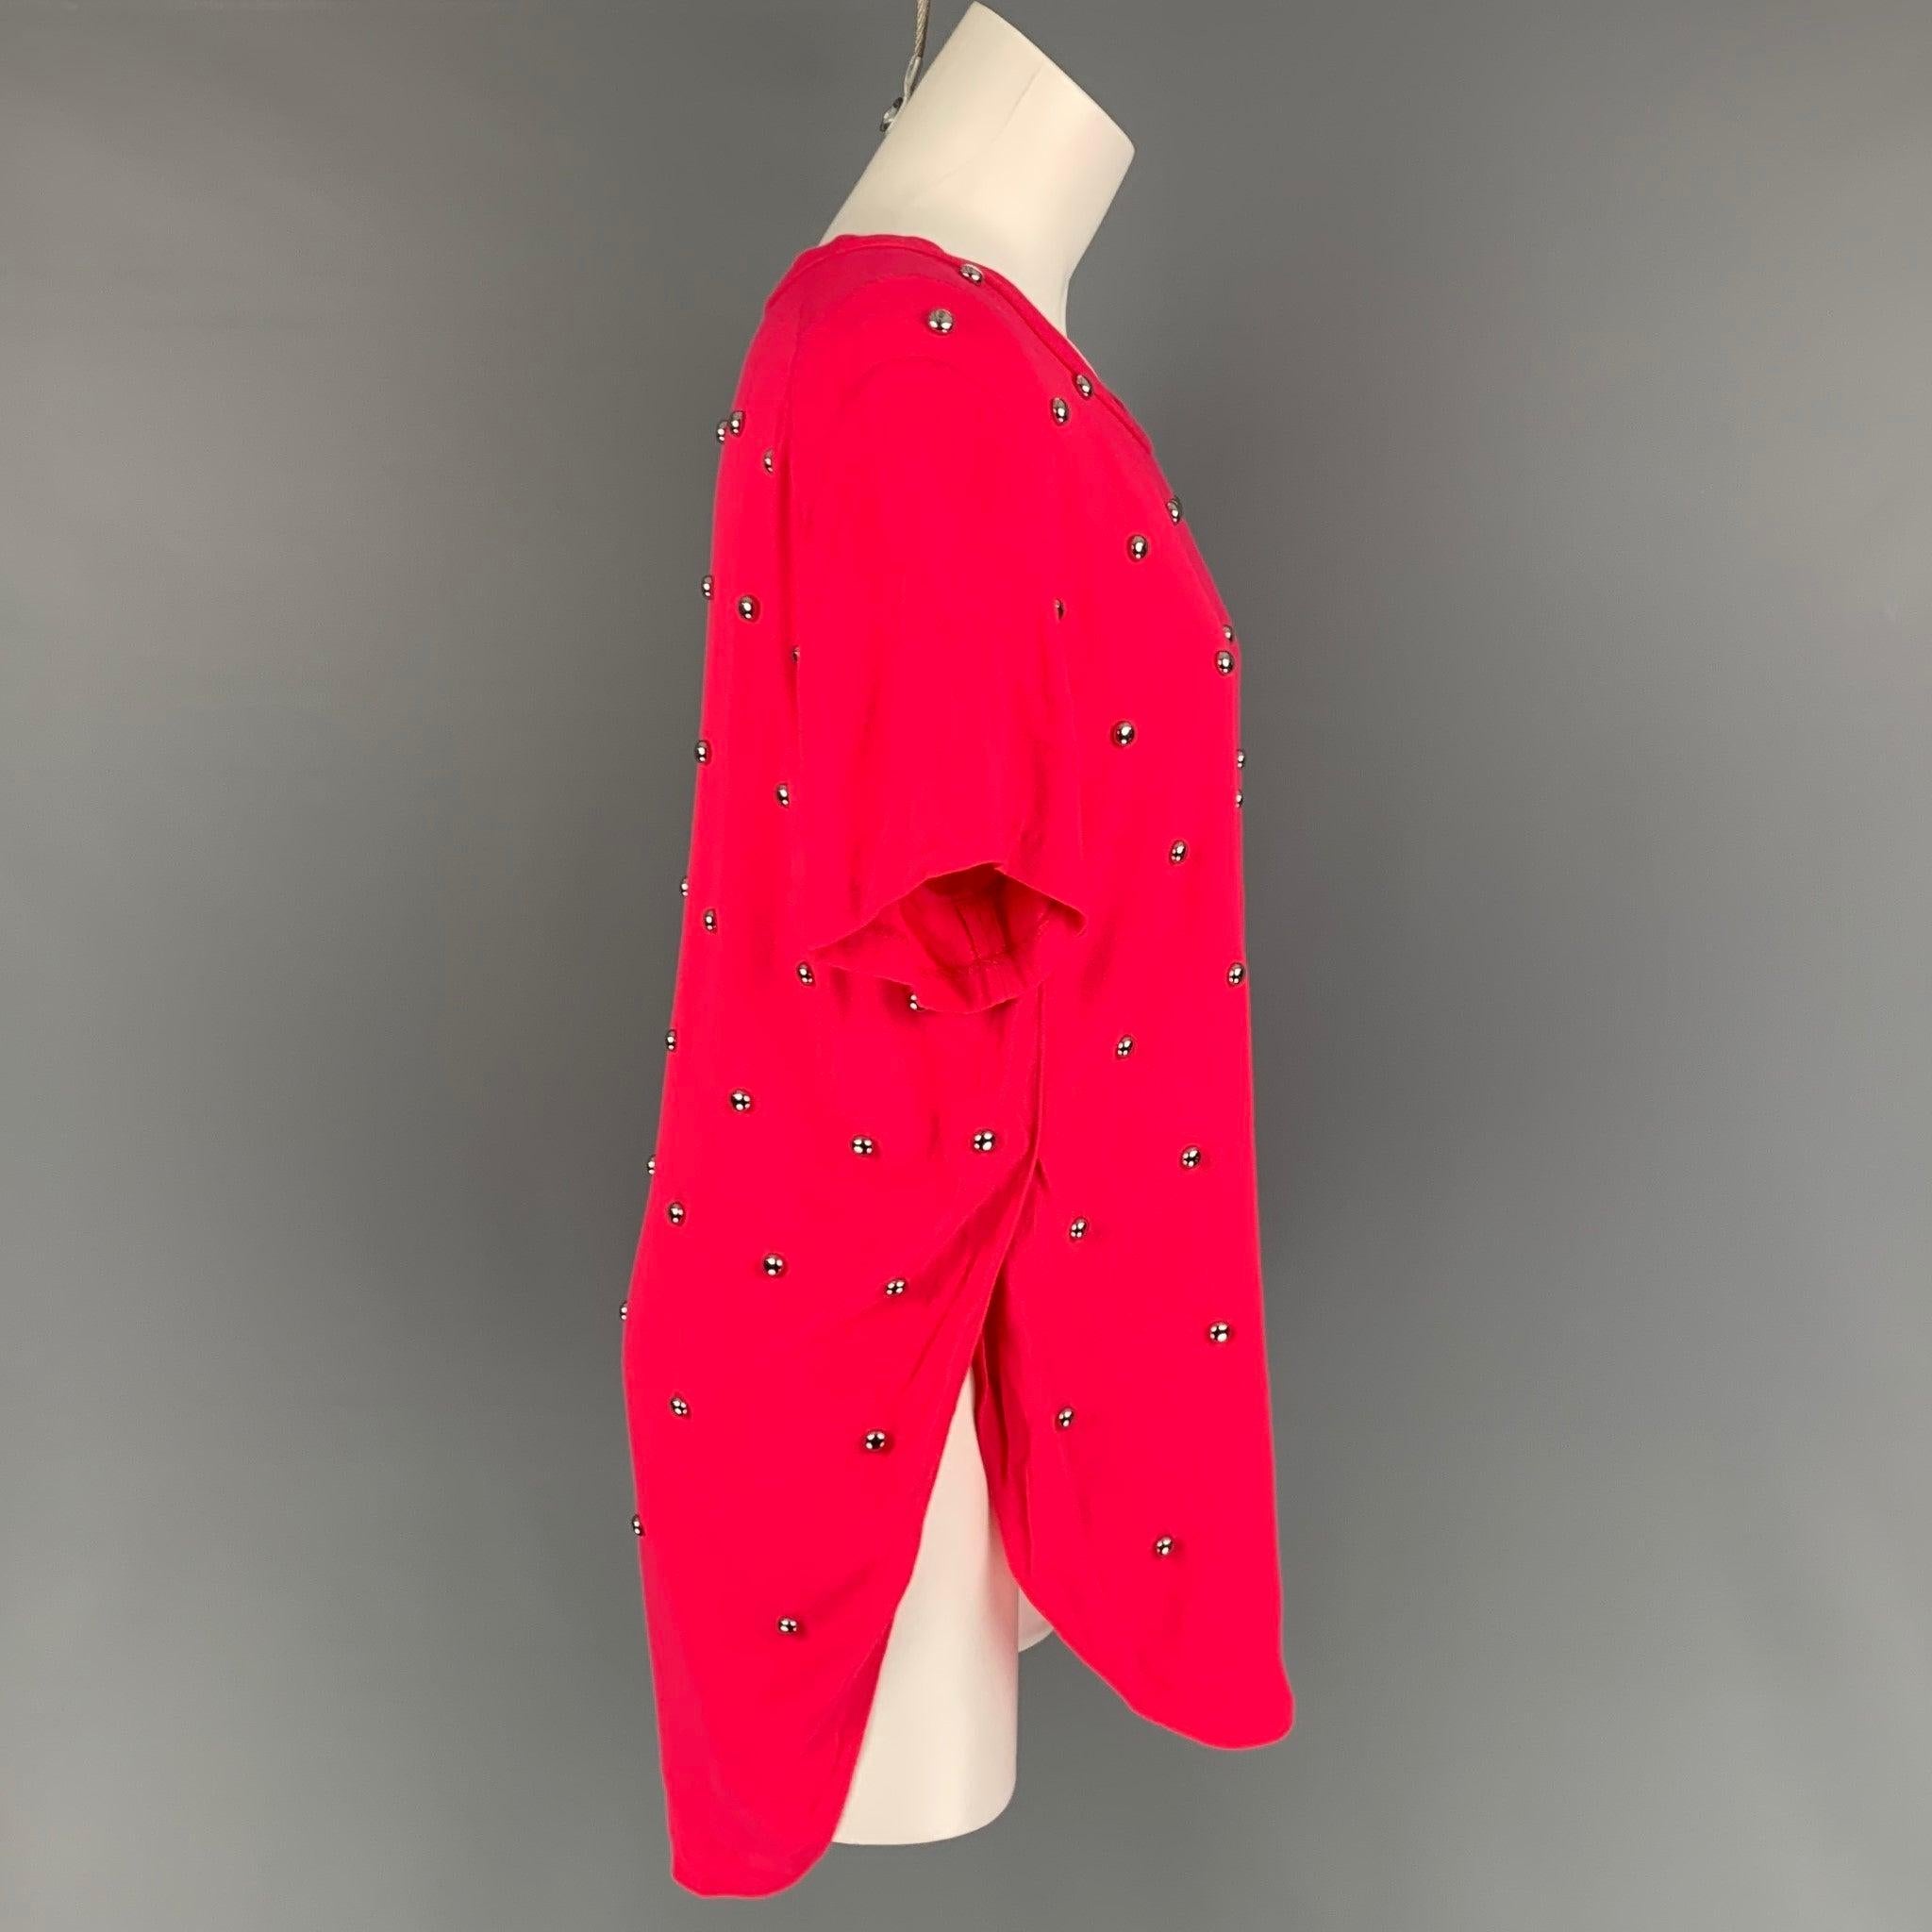 Le top habillé de 3.1 PHILLIP LIM se présente en viscose rose avec un motif clouté argenté sur l'ensemble, une fente sur le côté et un col ras-du-cou.
Très bien
Etat d'occasion. 

Marqué :   4 

Mesures : 
 
Épaule : 16.5 pouces  Poitrine : 40